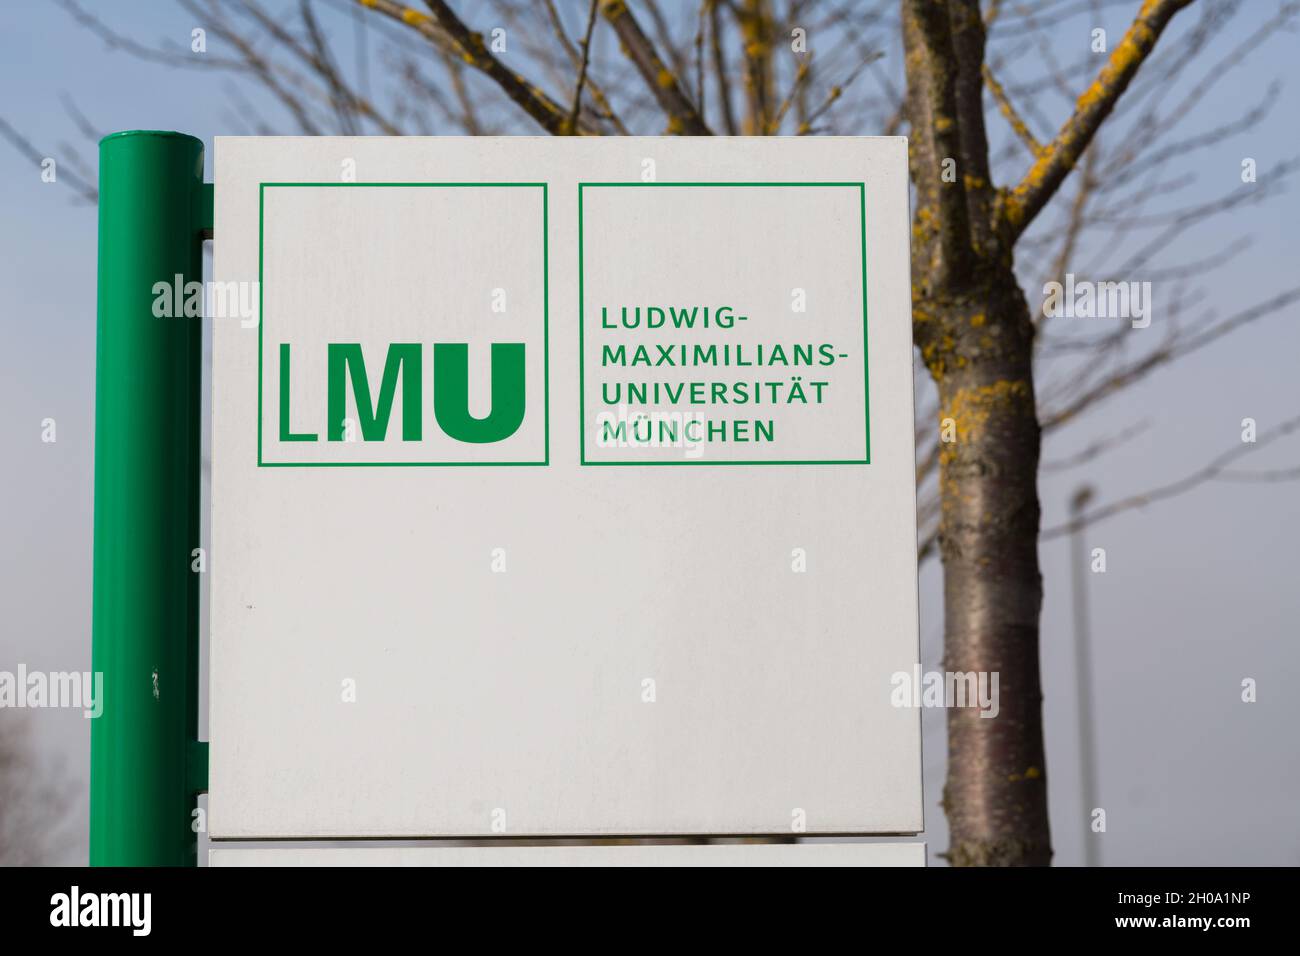 Martinsried, Allemagne - 9 mars 2021: Panneau à LMU - Ludwig-Maximilians-Universität München.Célèbre université située à Munich, en Allemagne. Banque D'Images